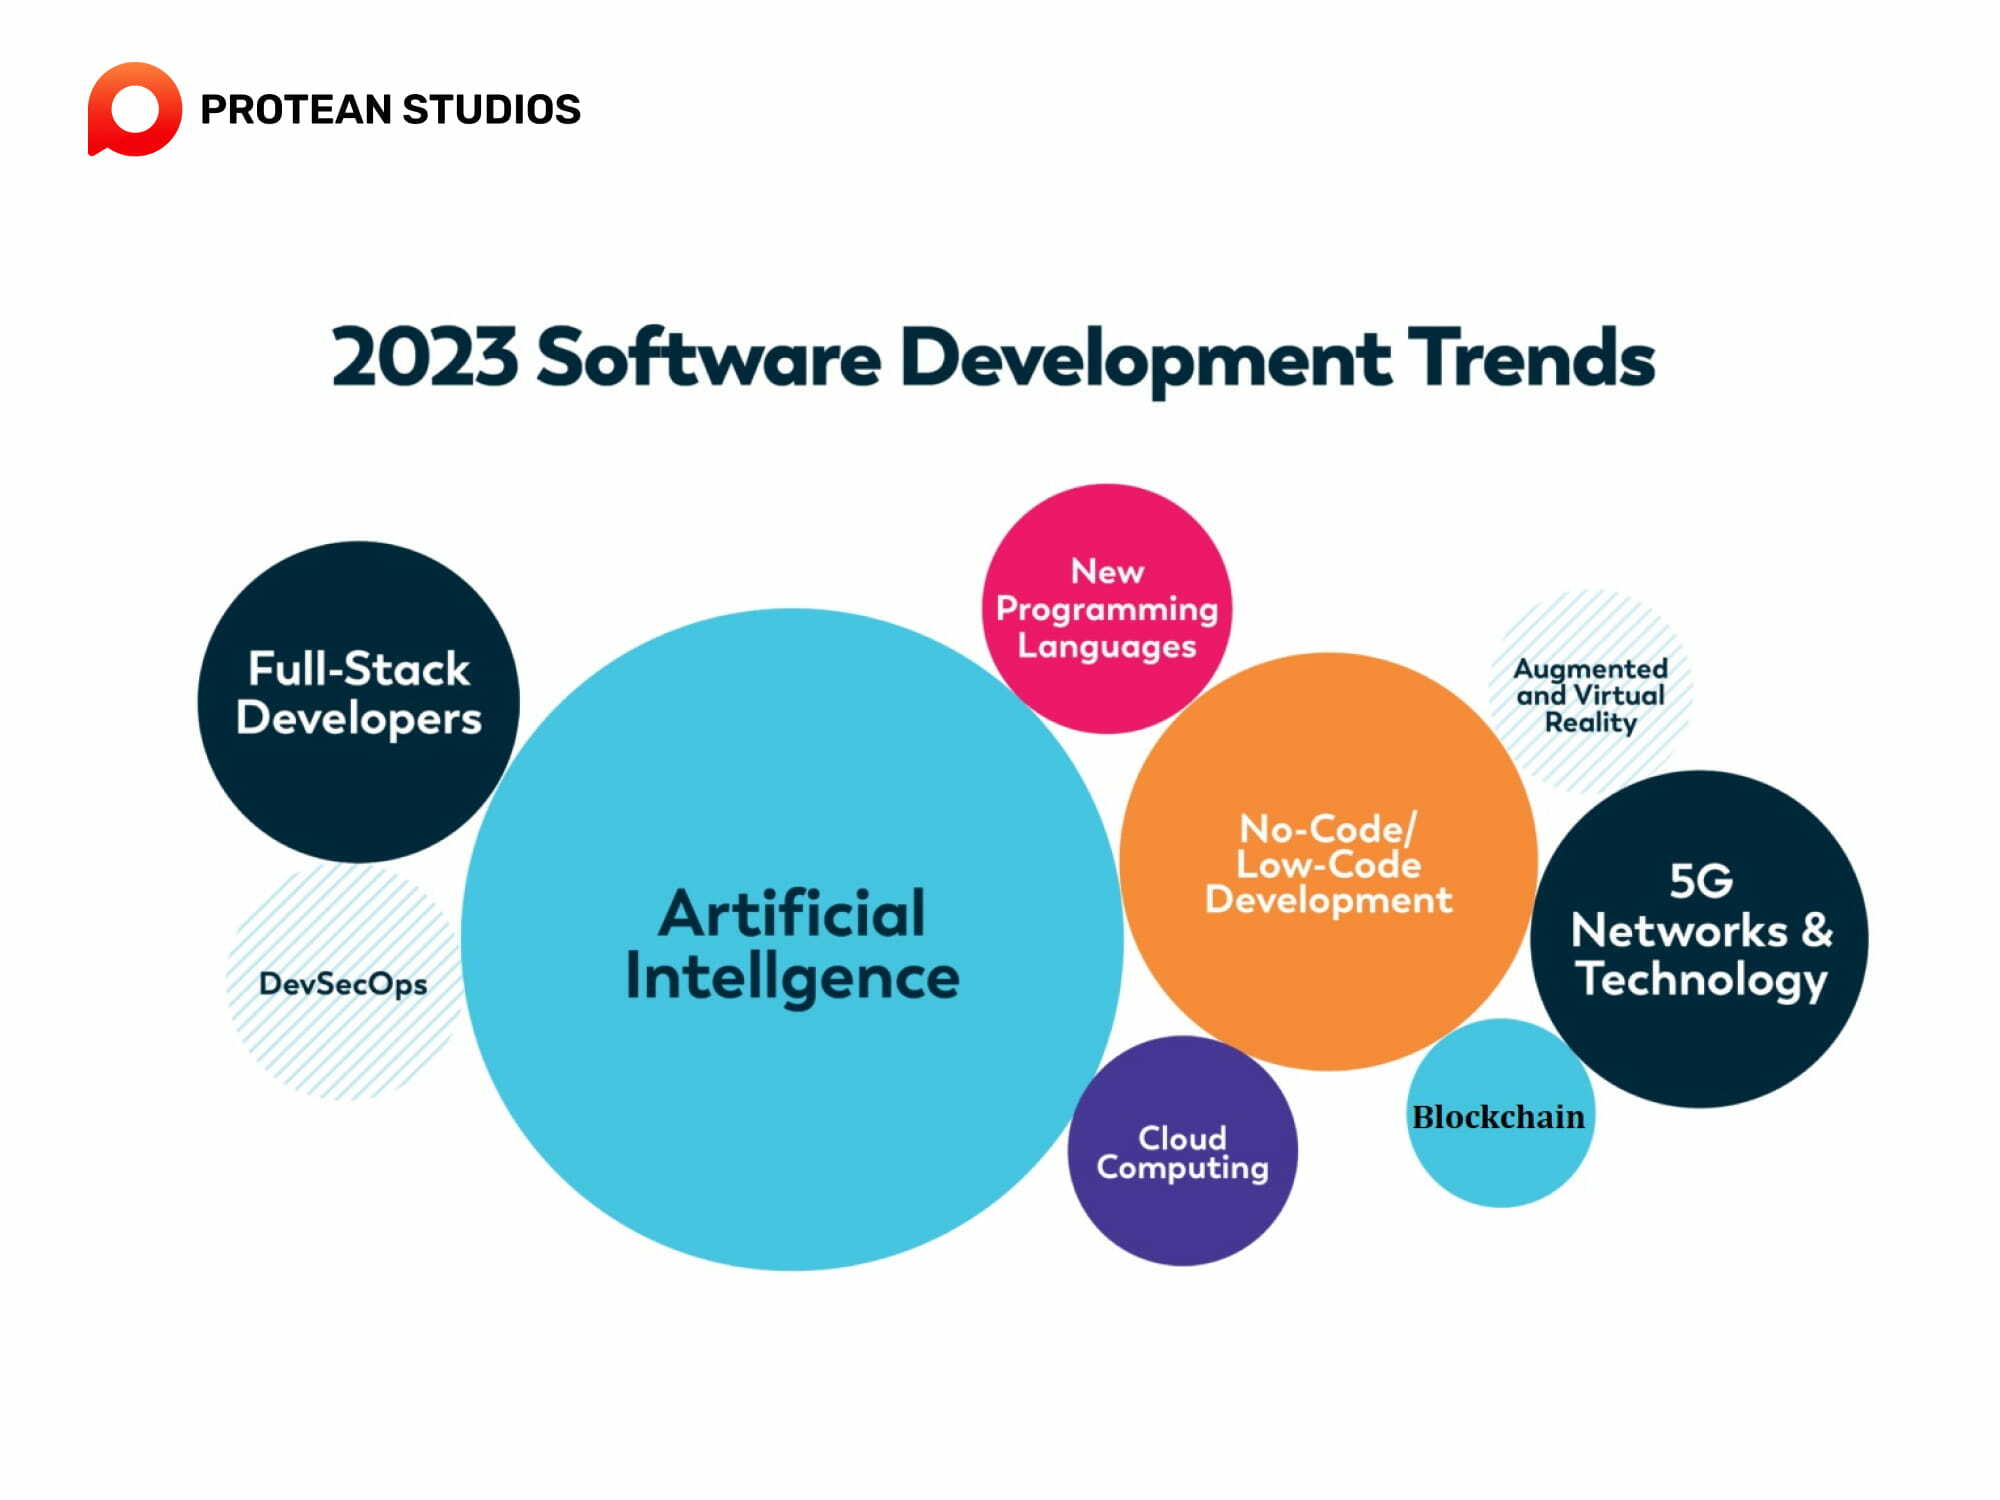 Top 10 software trends in 2023